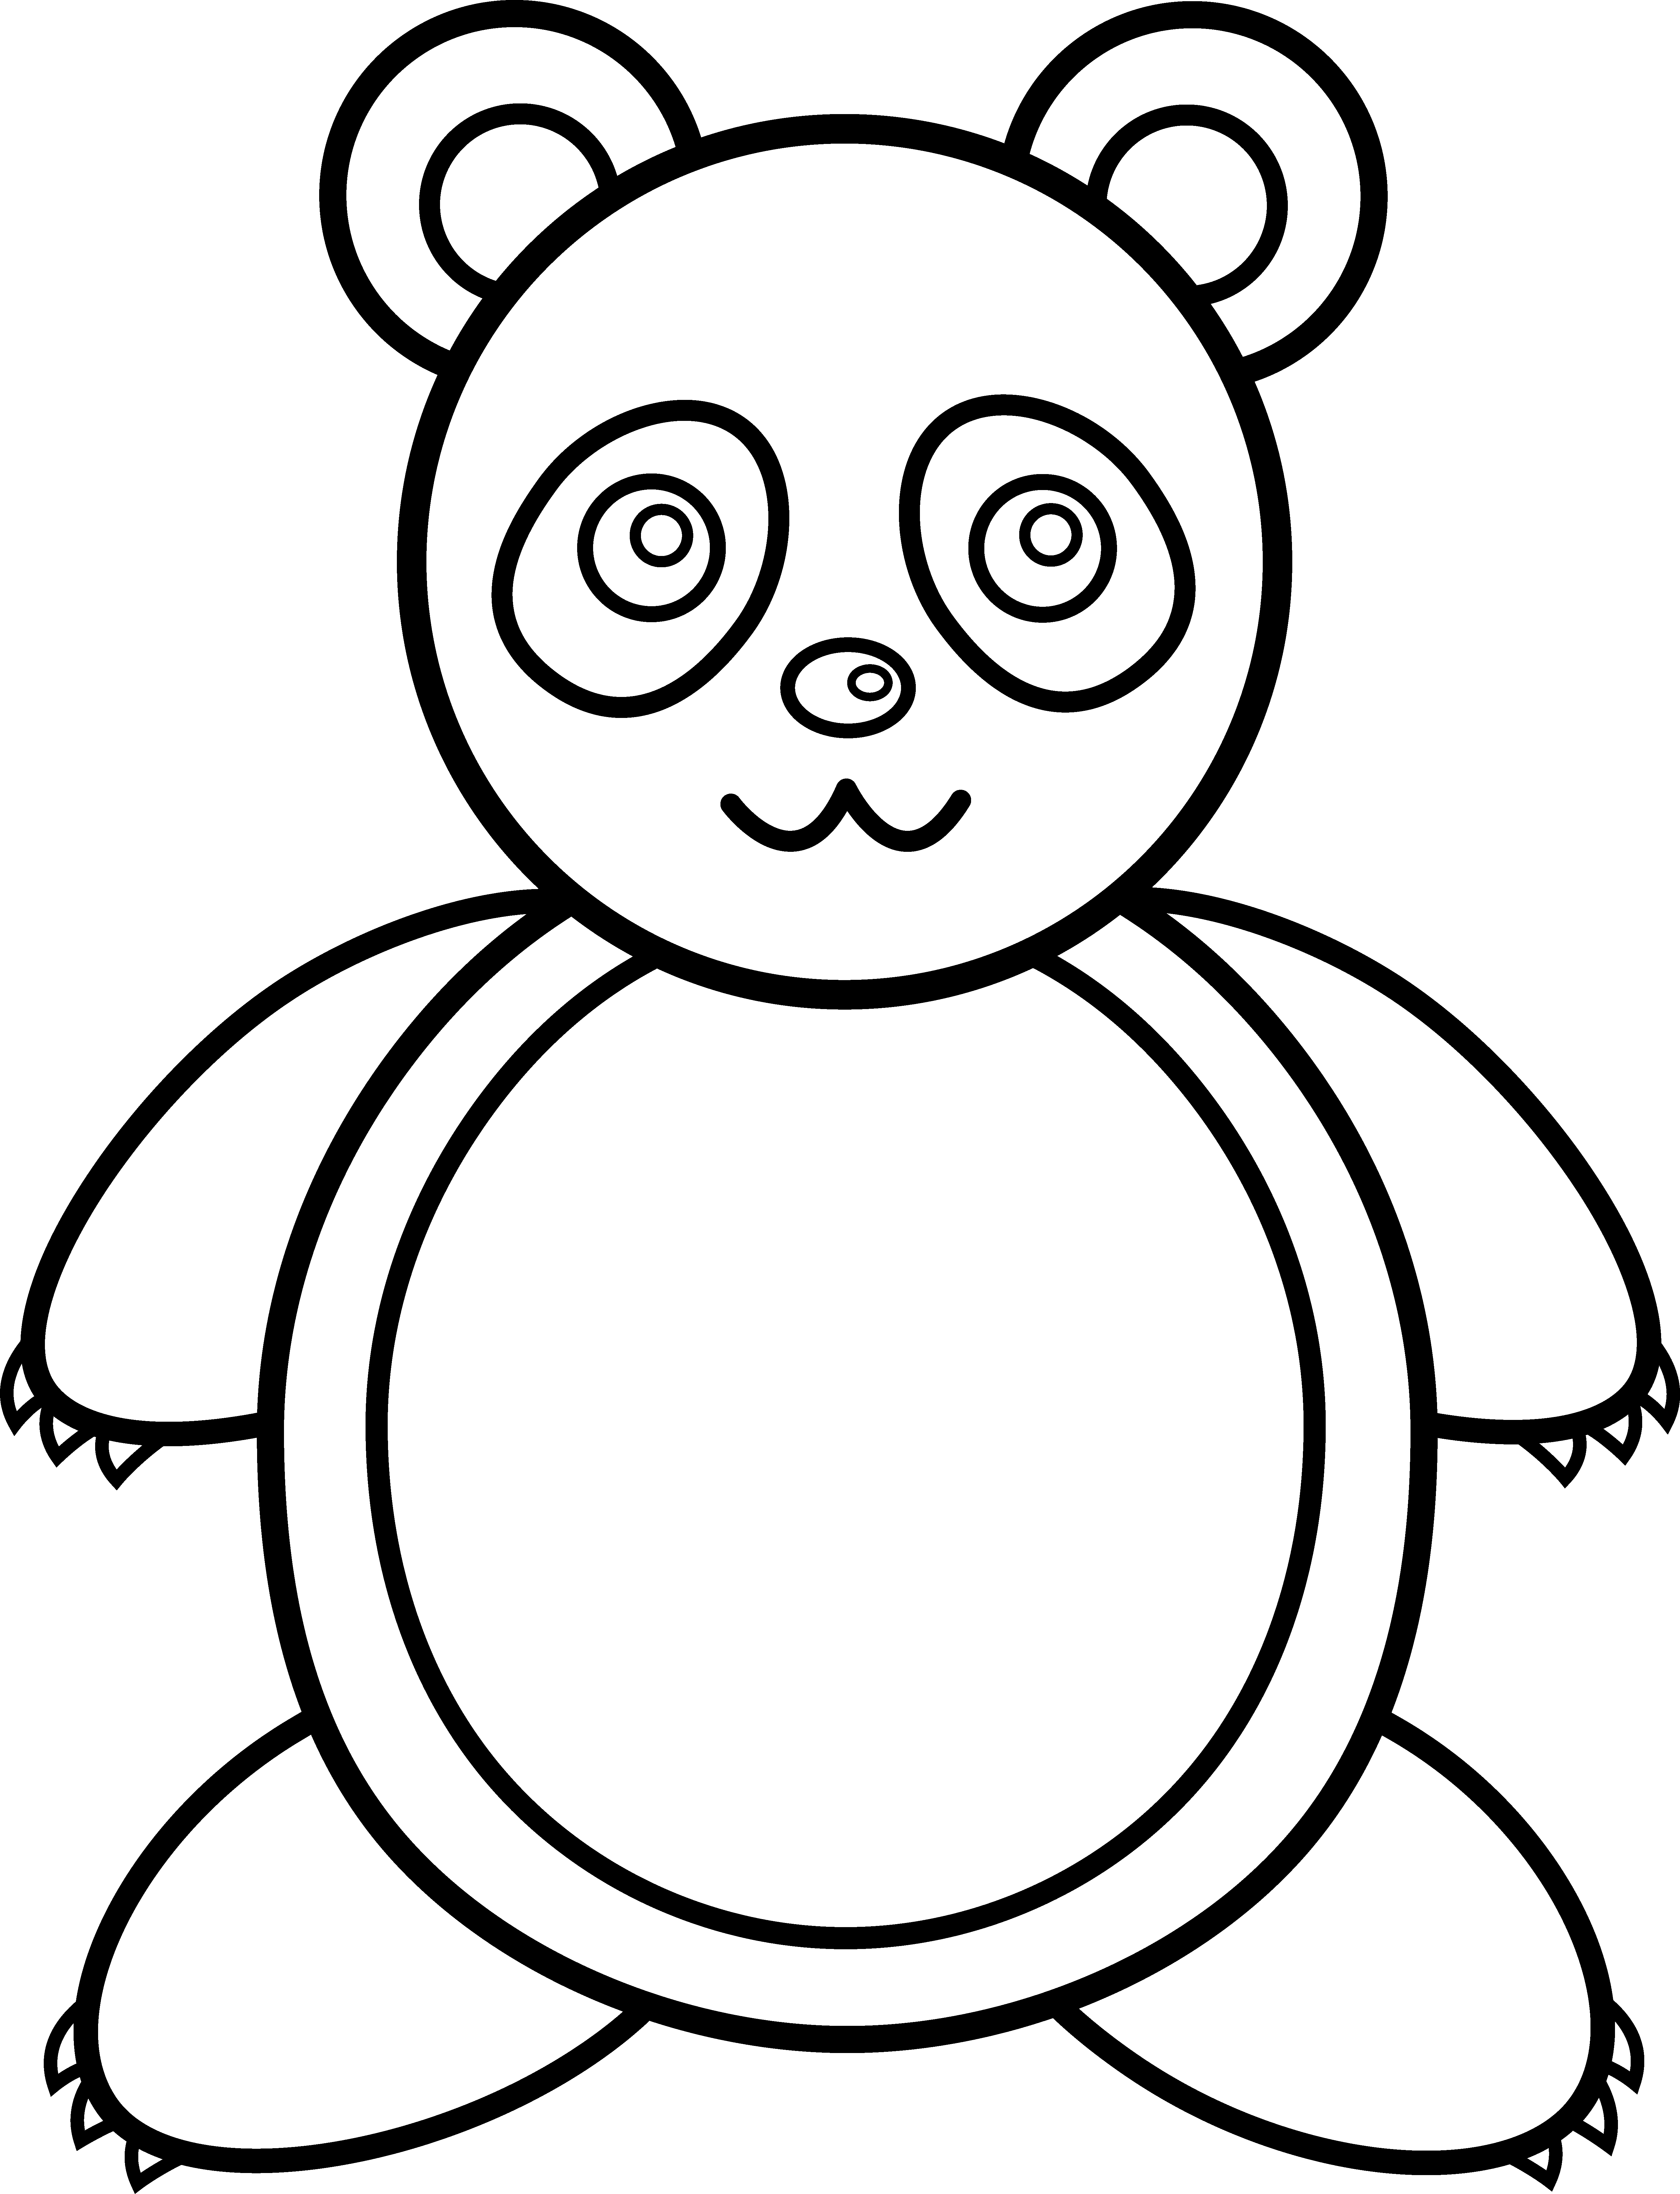 Panda Bear Line Art - Free Clip Art